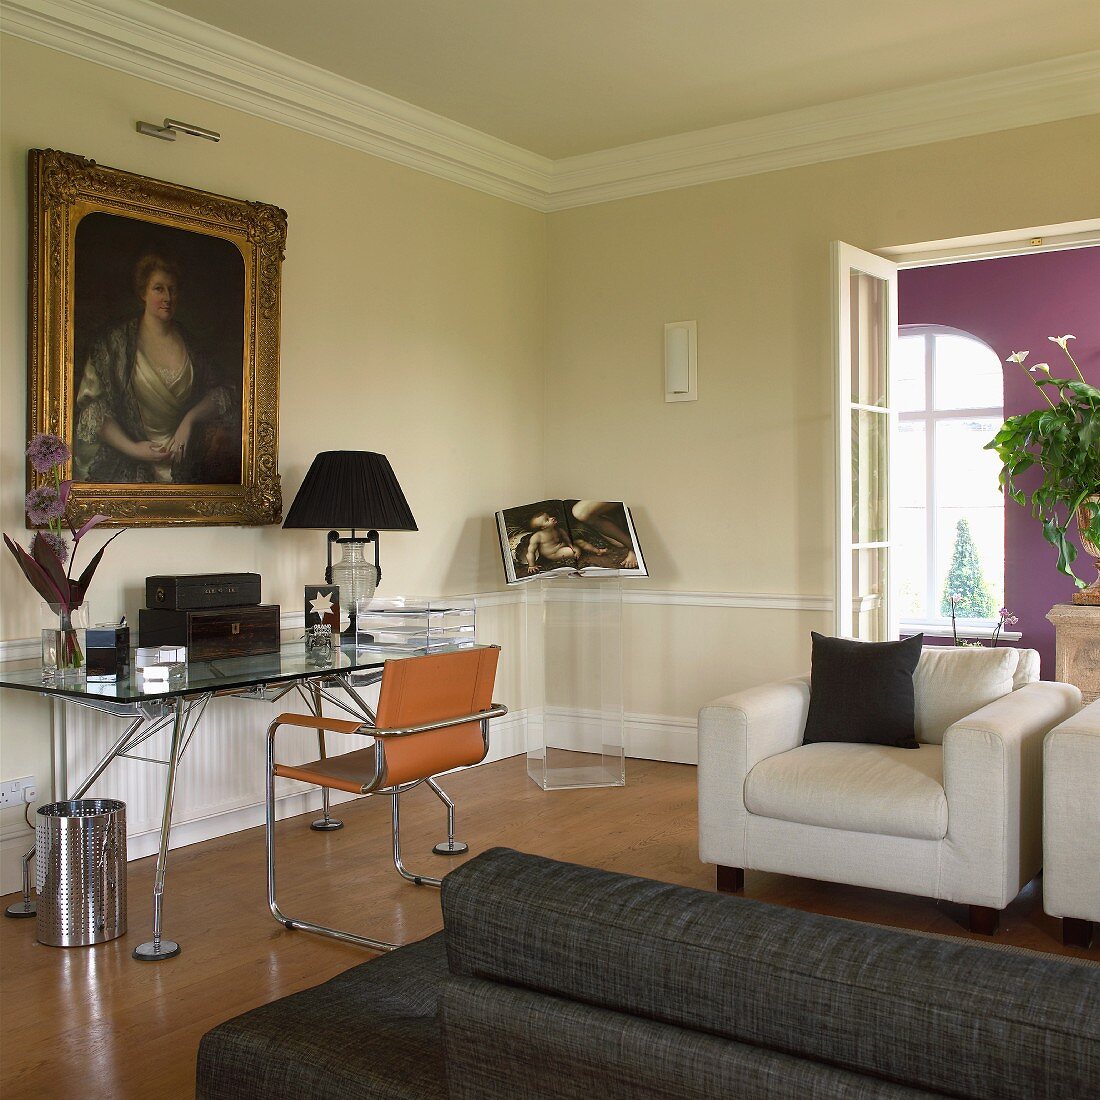 Modernes Designermobiliar in Wohnzimmer mit goldgerahmtem Frauenportrait